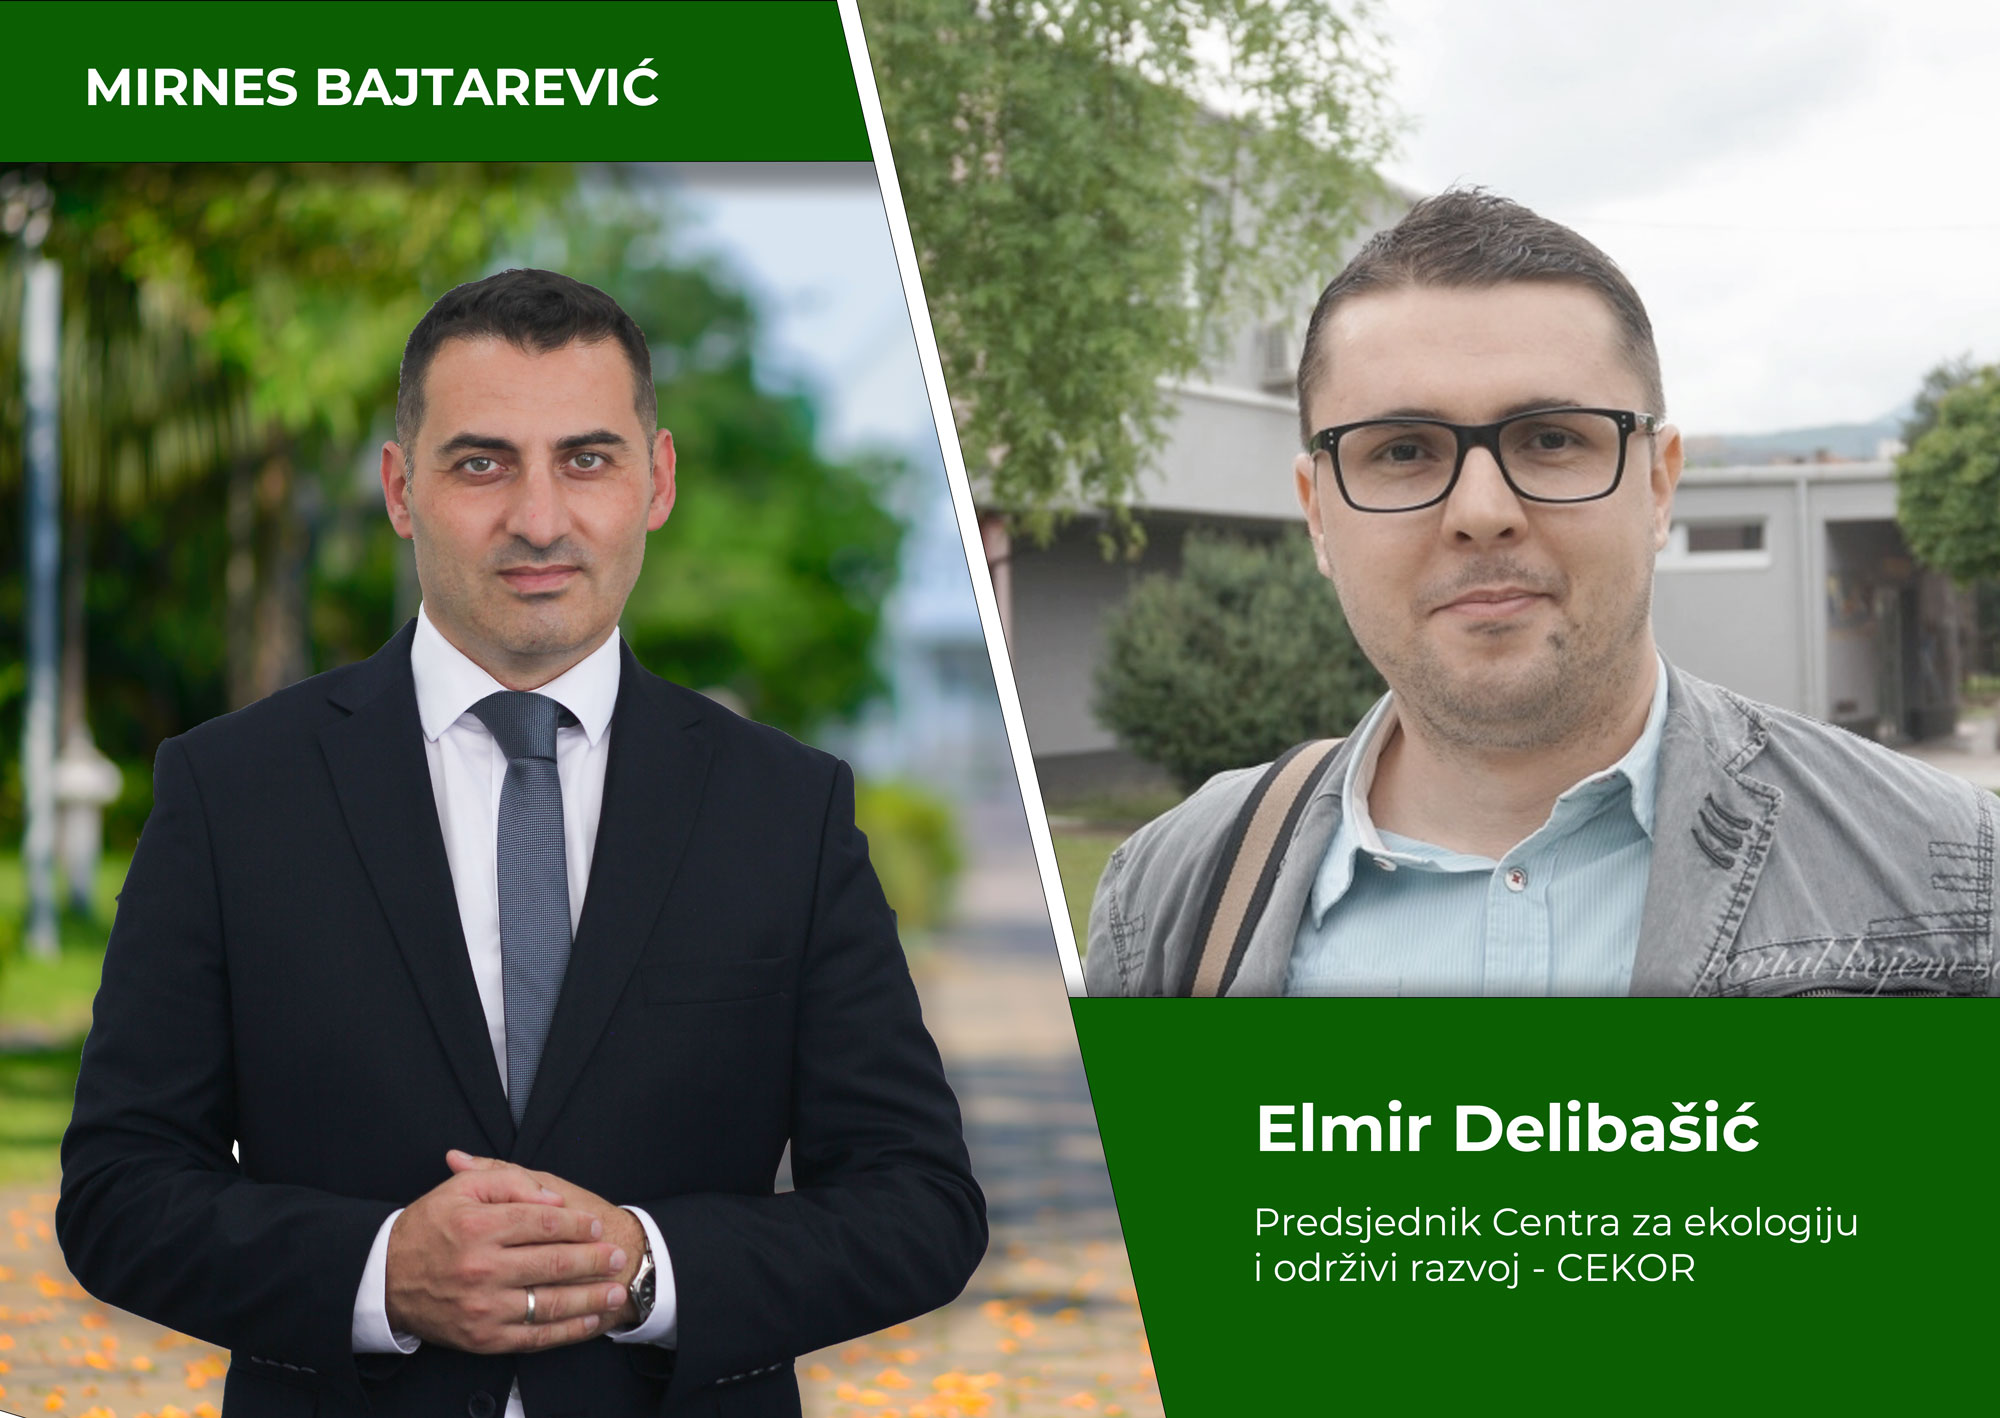 Elmir Delibašić: Čvrsto podržavamo Mirnesa Bajtarevića, kandidata za načelnika Općine Kakanj